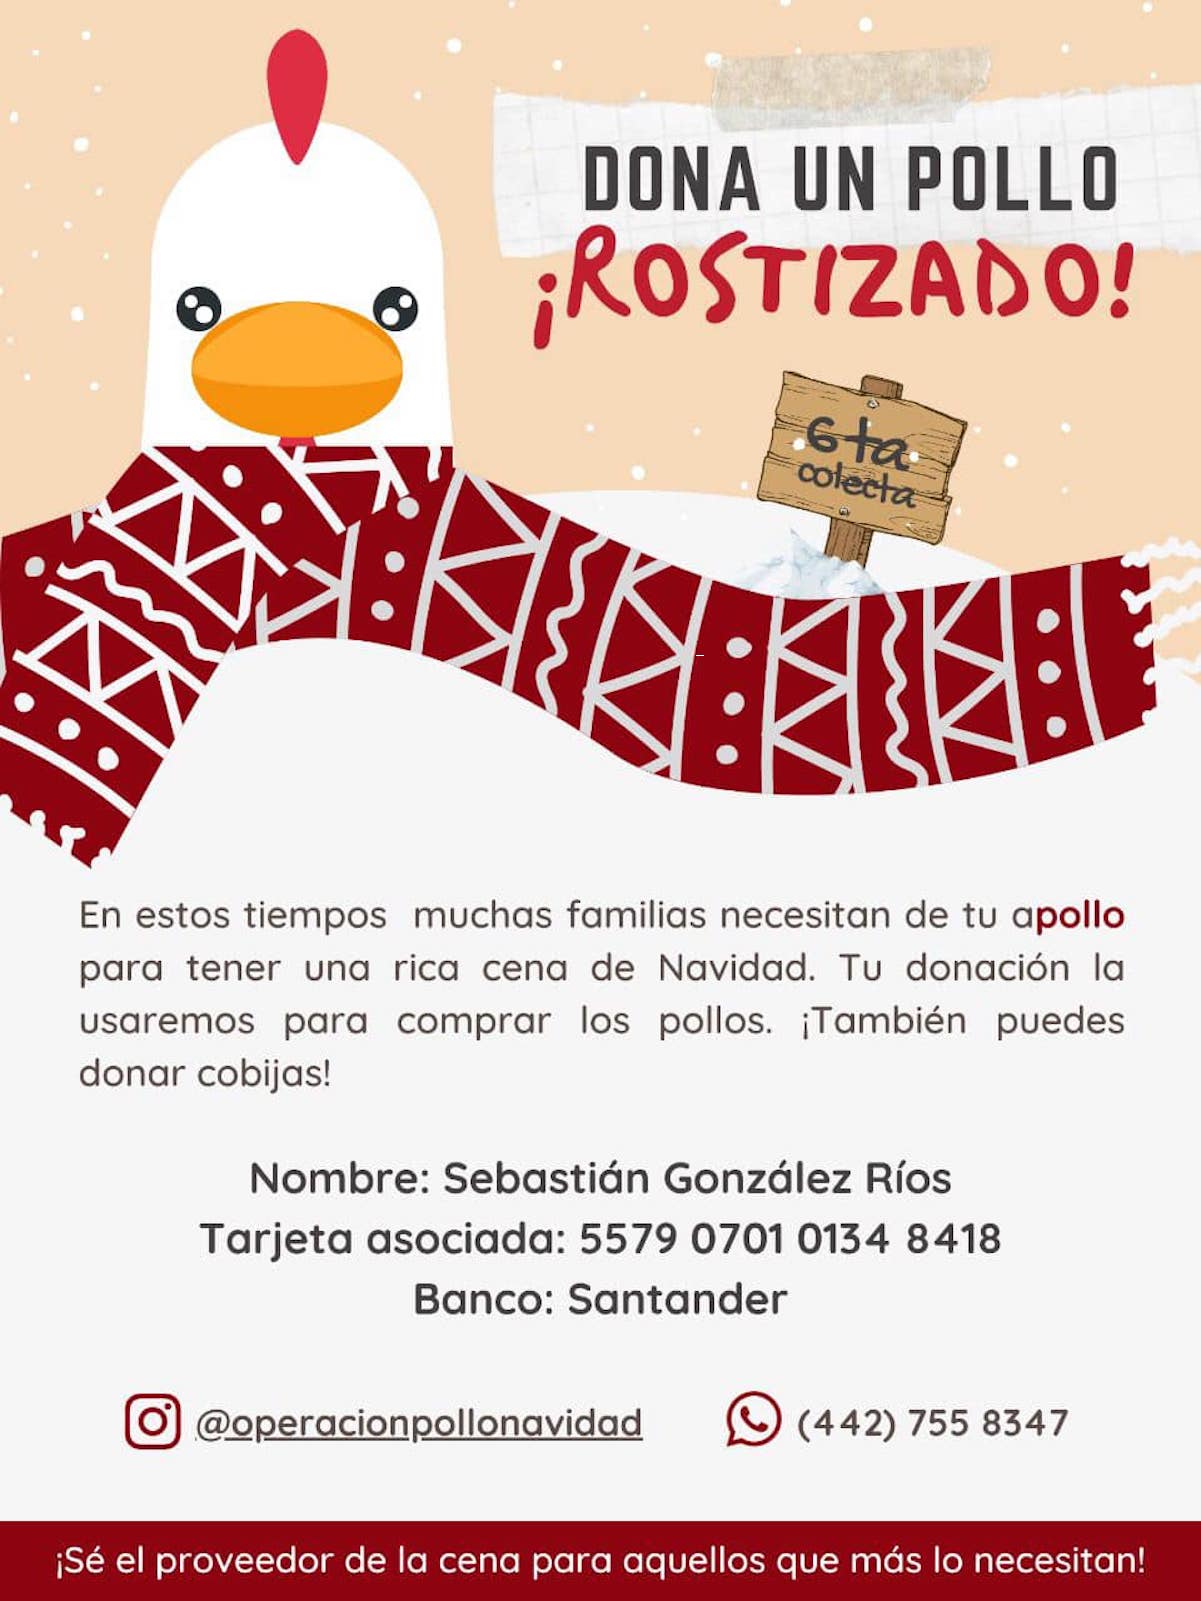 Jóvenes organizan colecta de pollos rostizados para regalar en Navidad, en Querétaro